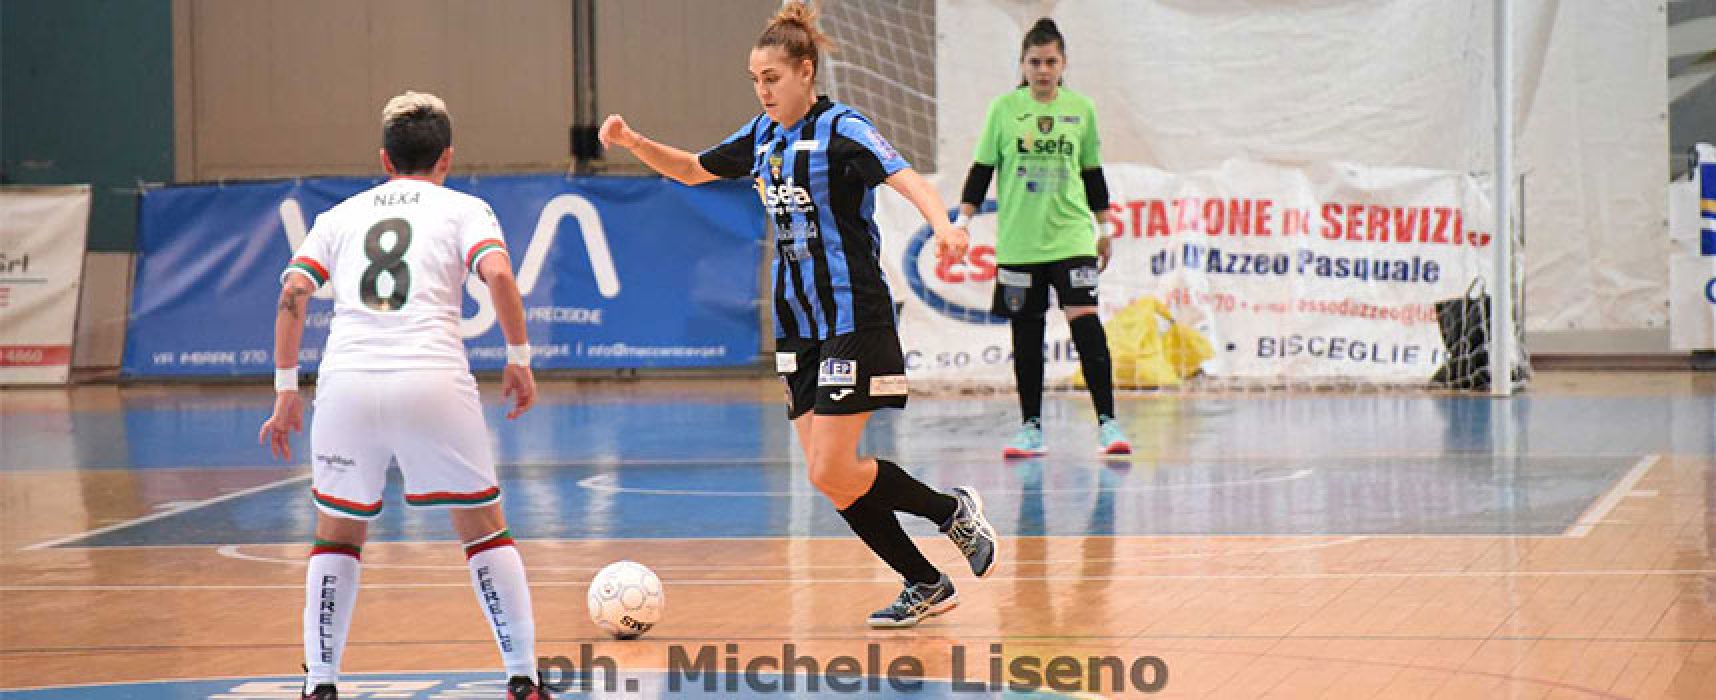 Bisceglie Femminile ospita il Futsal Breganze nell’anticipo del sabato sera